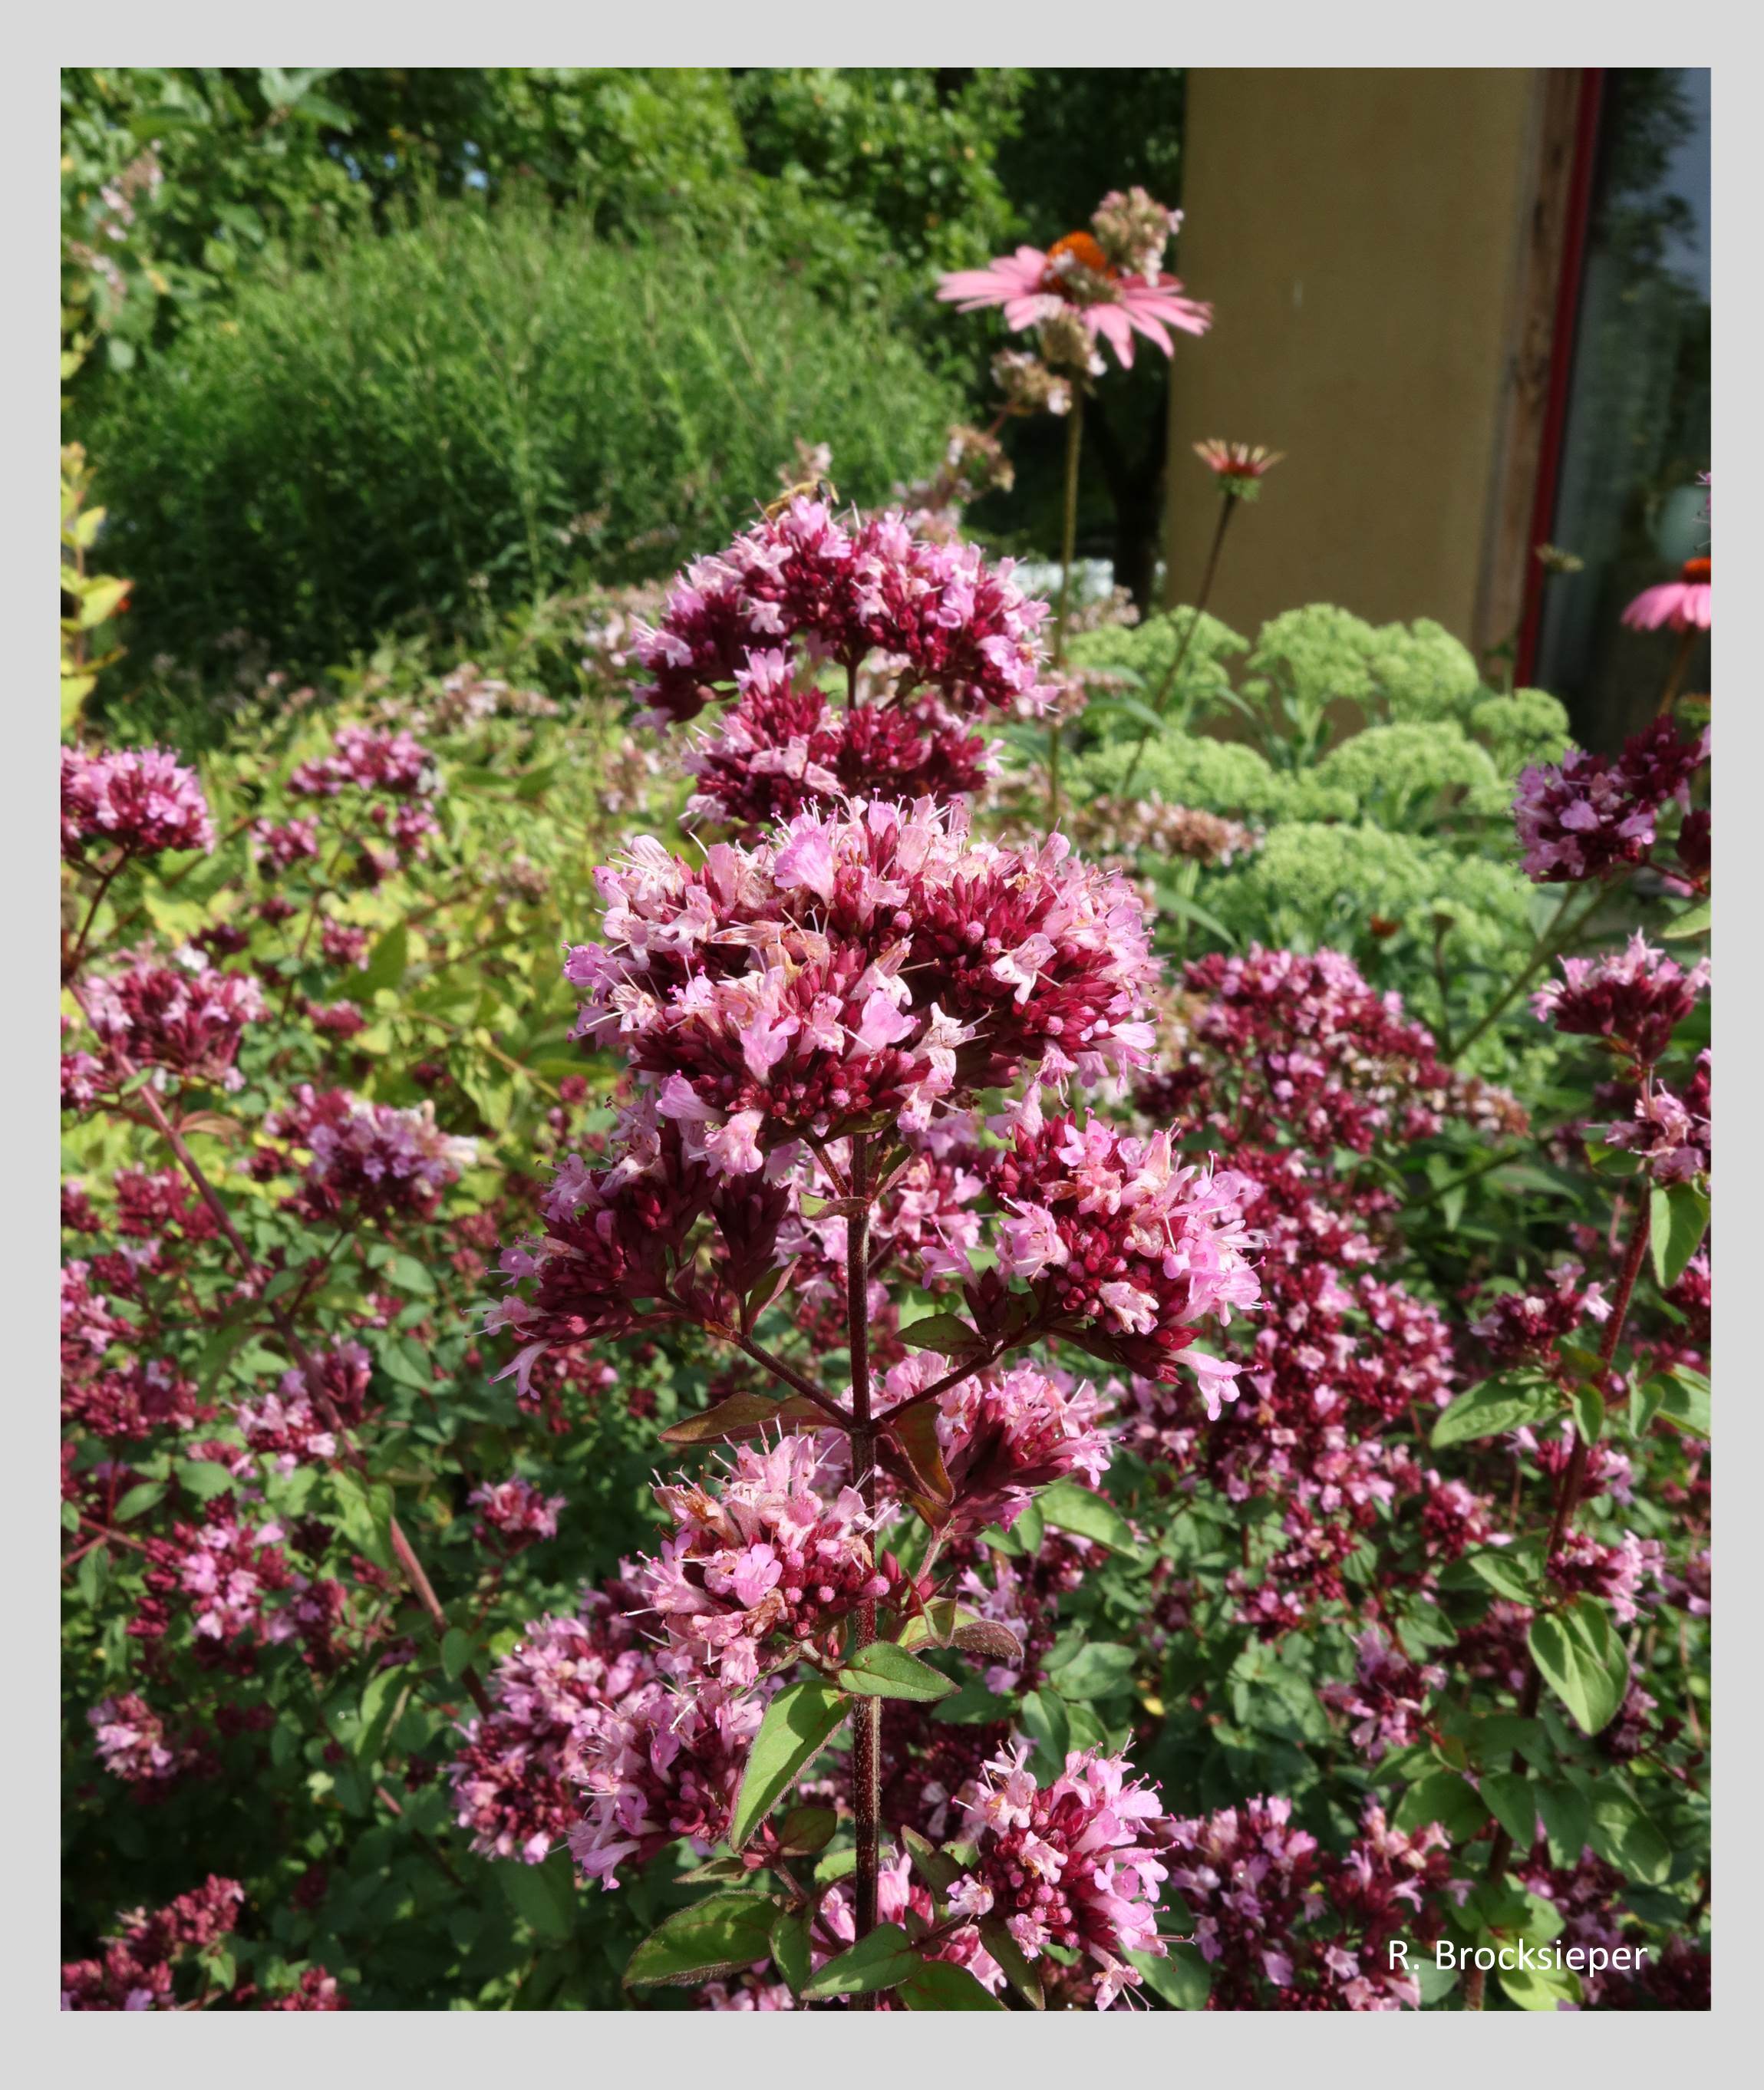 Der  Echte Dost oder Oreganum (Origanum vulgare) wächst gern auf sonnigen, steinigen Böden, ist aber auch in durchschnittlichem Gartenboden zu kultivieren. Die rosa Blüten locken von Sommer bis Herbst unzählige  Insekten an. Als Pizza- und Pastagewürz kennt ihn jeder. 